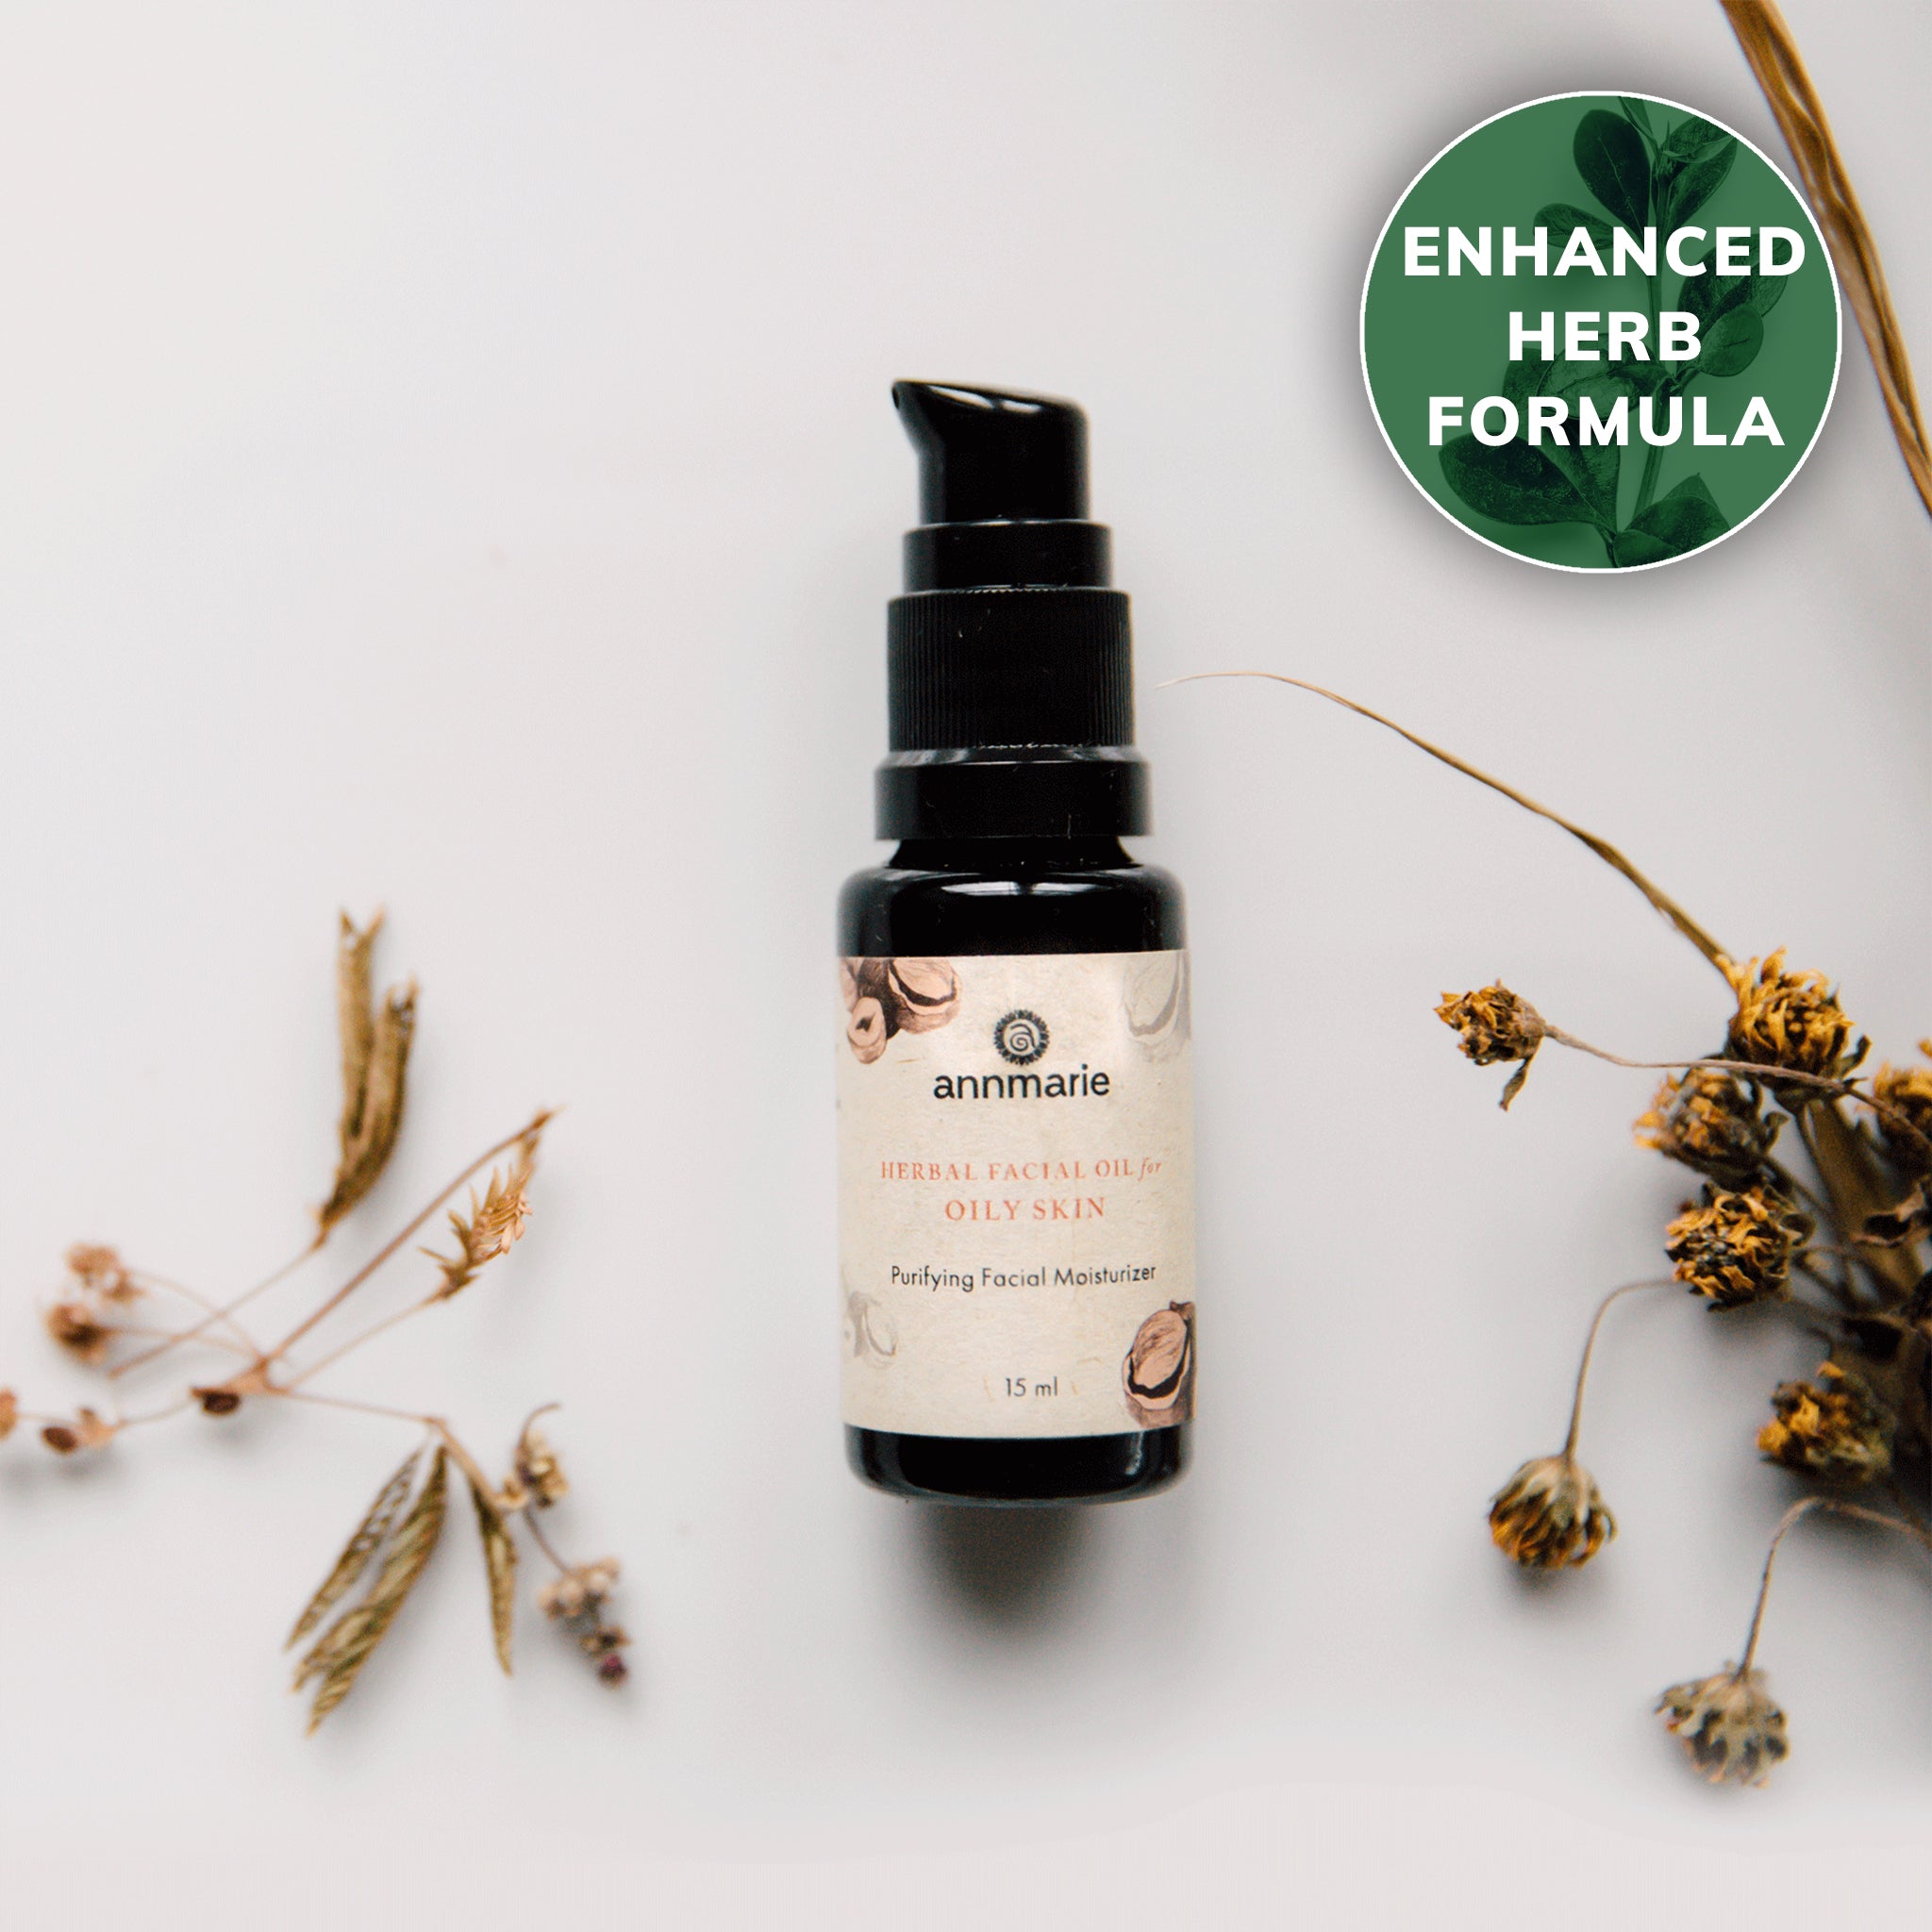 annmarie Herbal Facial Oil